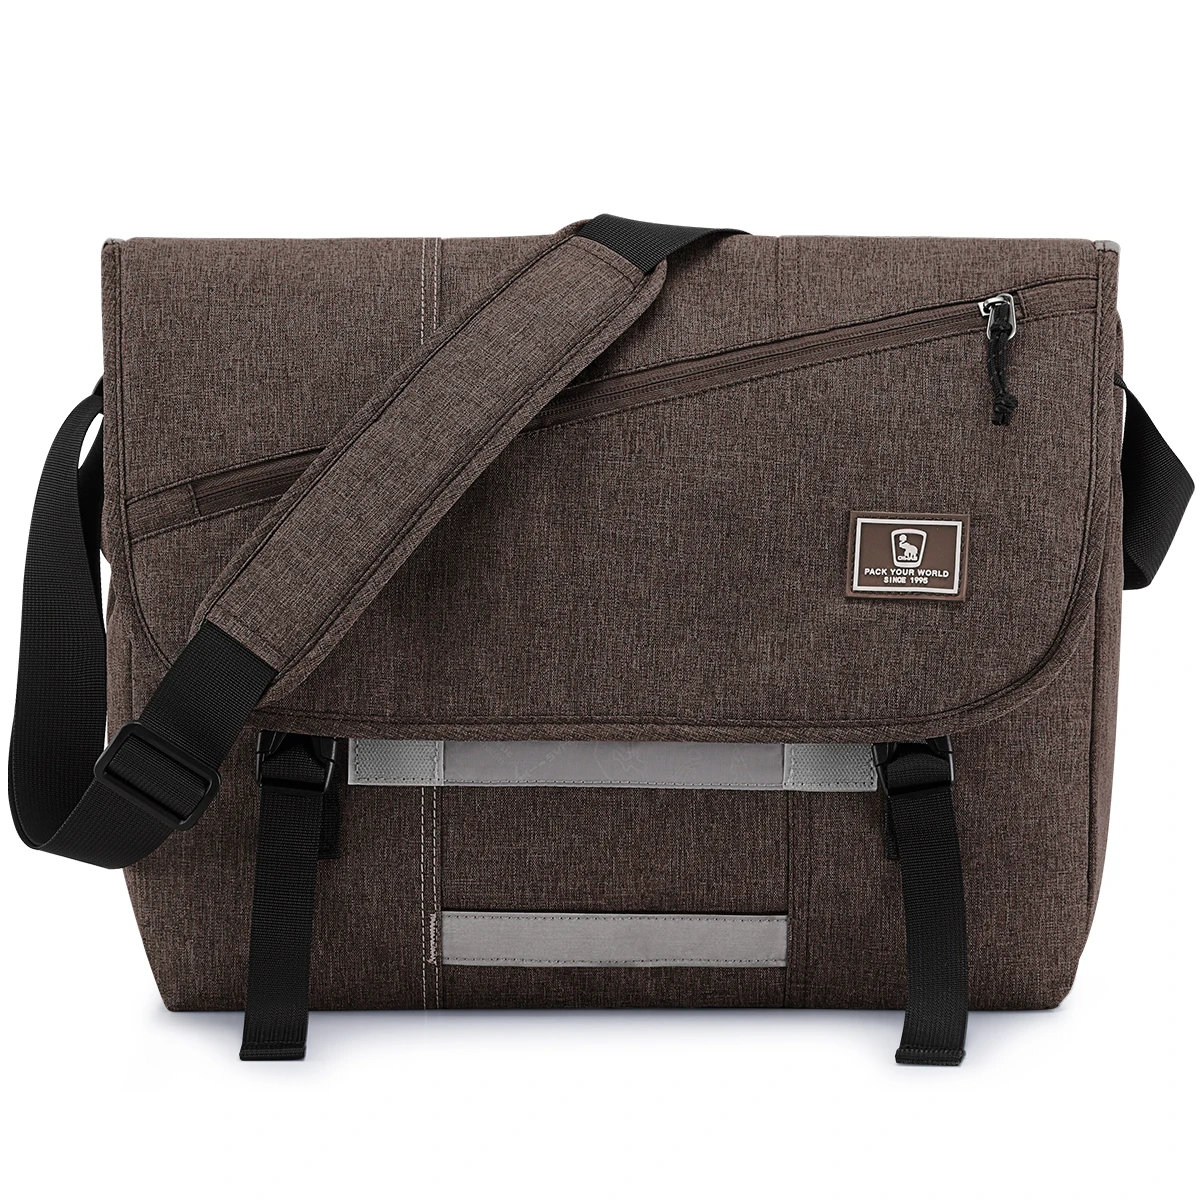 N shoulder bag fashion travel sling messenger bag men s canvas briefcase 15 inch laptop thumb200